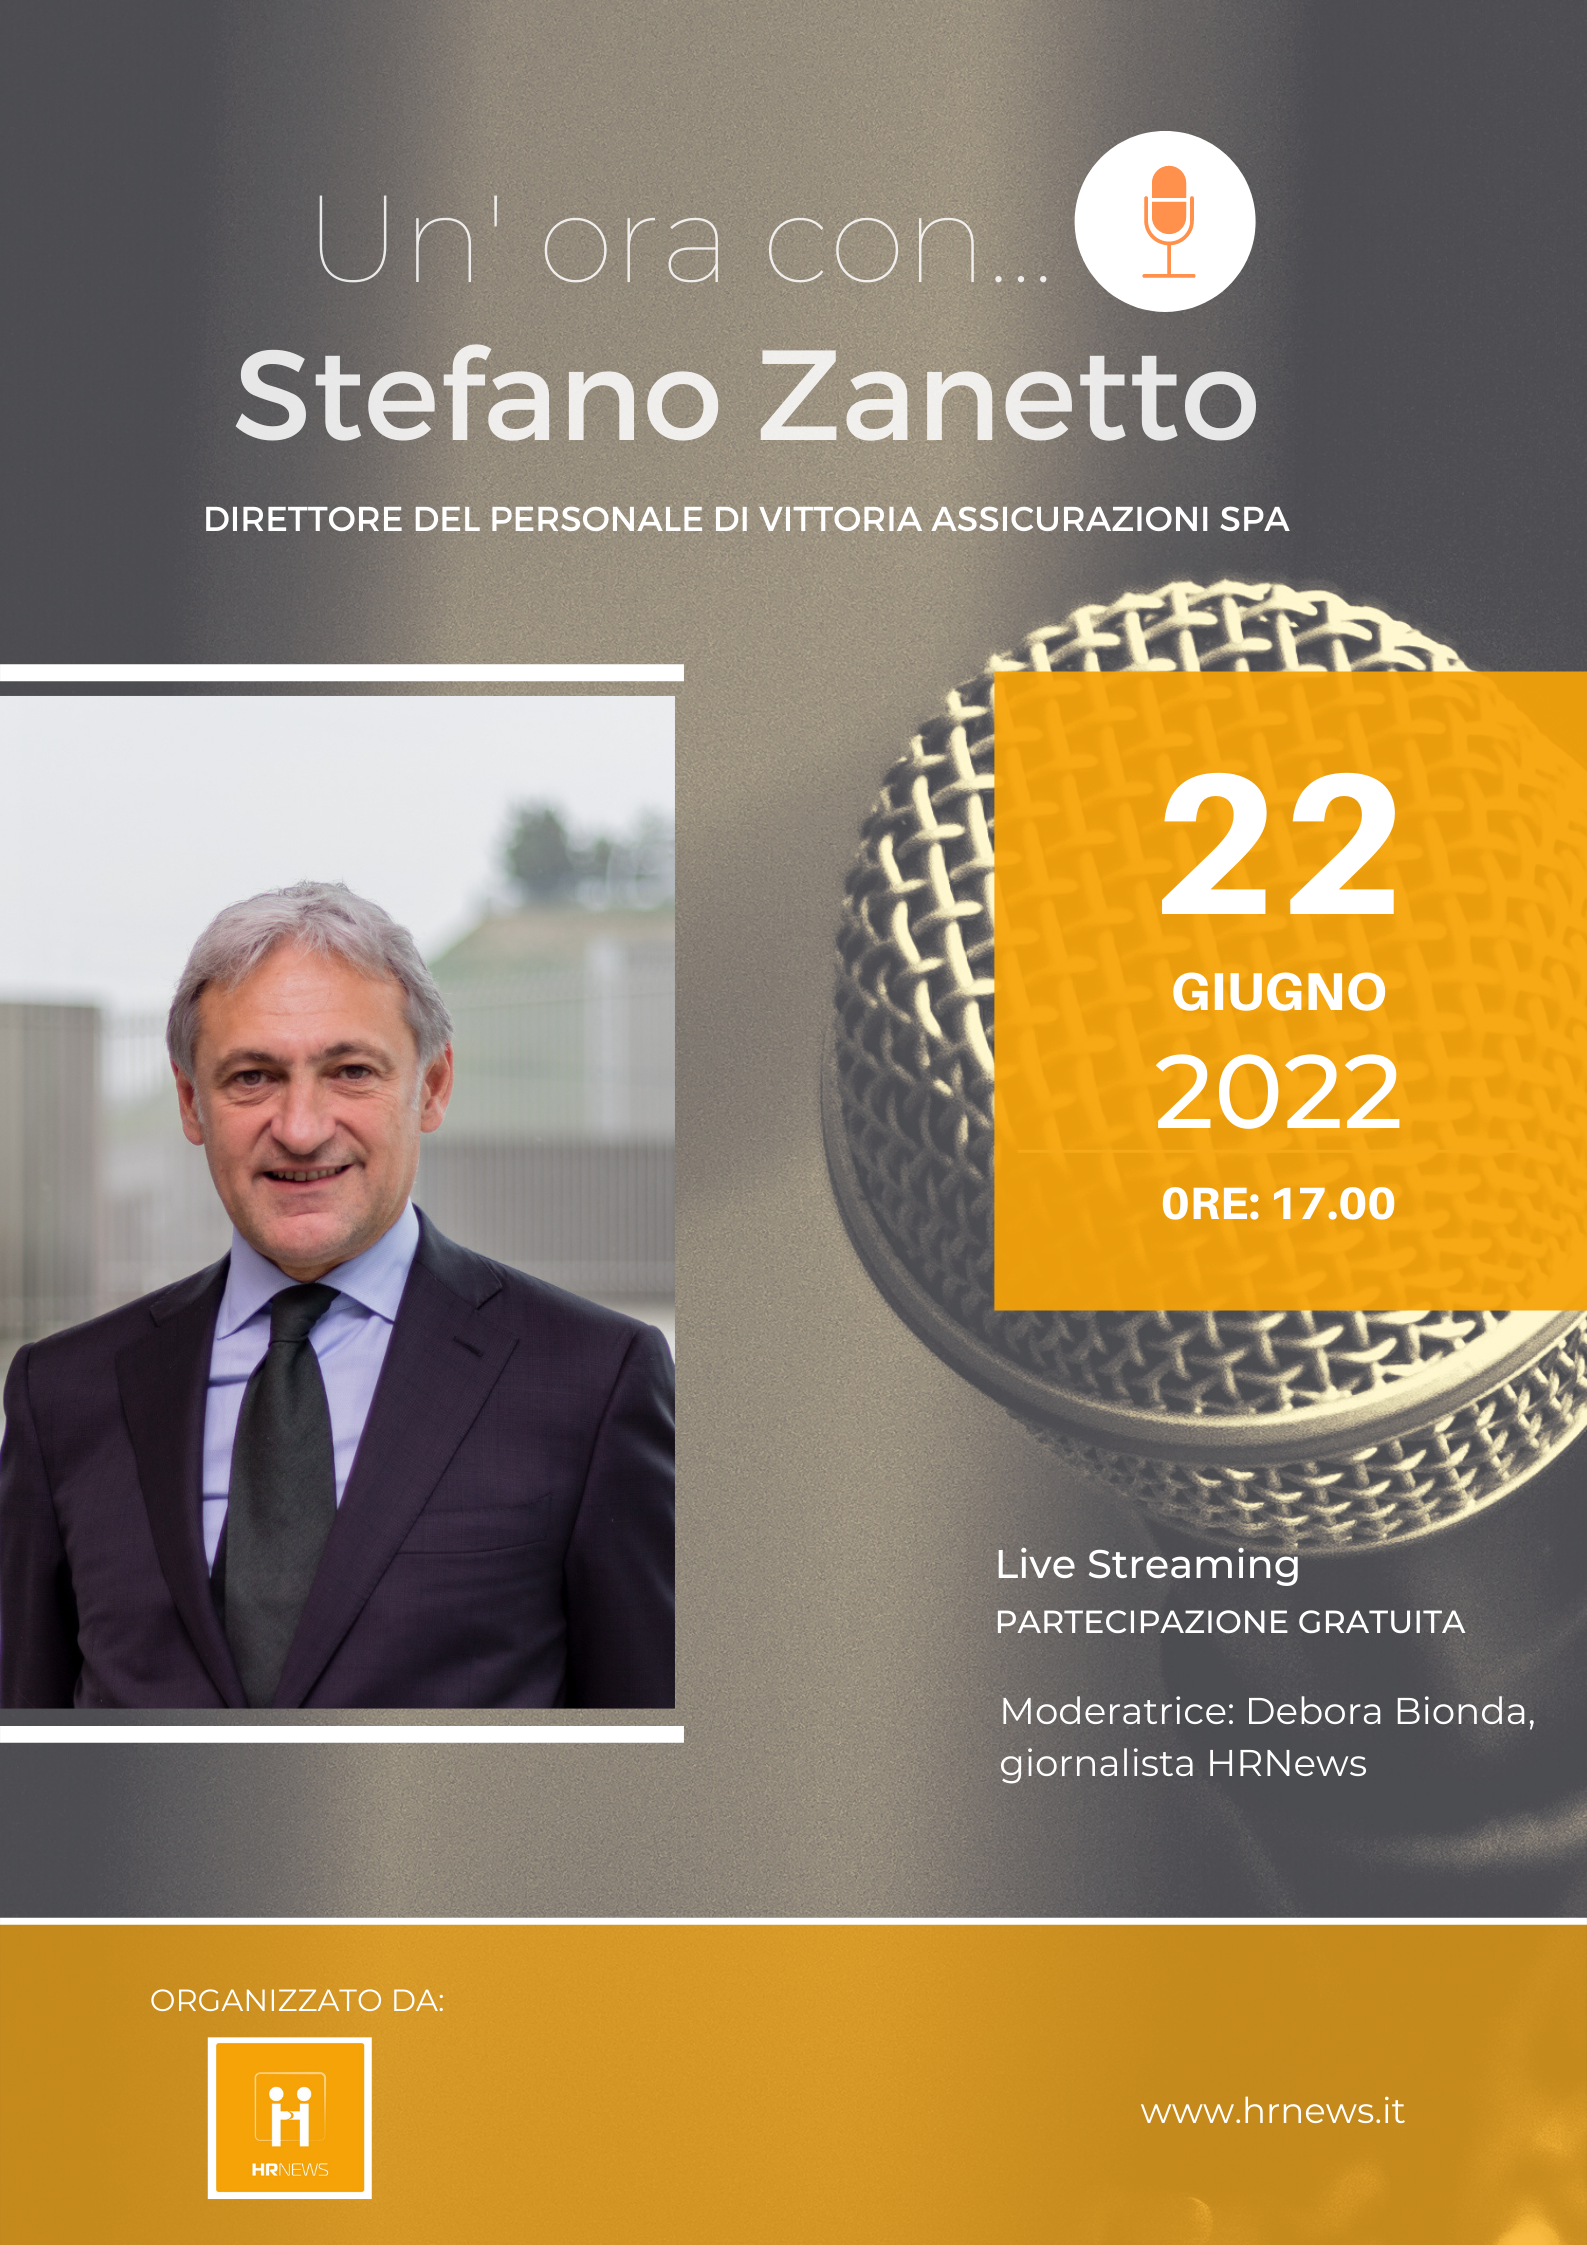 Un'ora con... Stefano Zanetto, Direttore del Personale di Vittoria Assicurazioni SpA